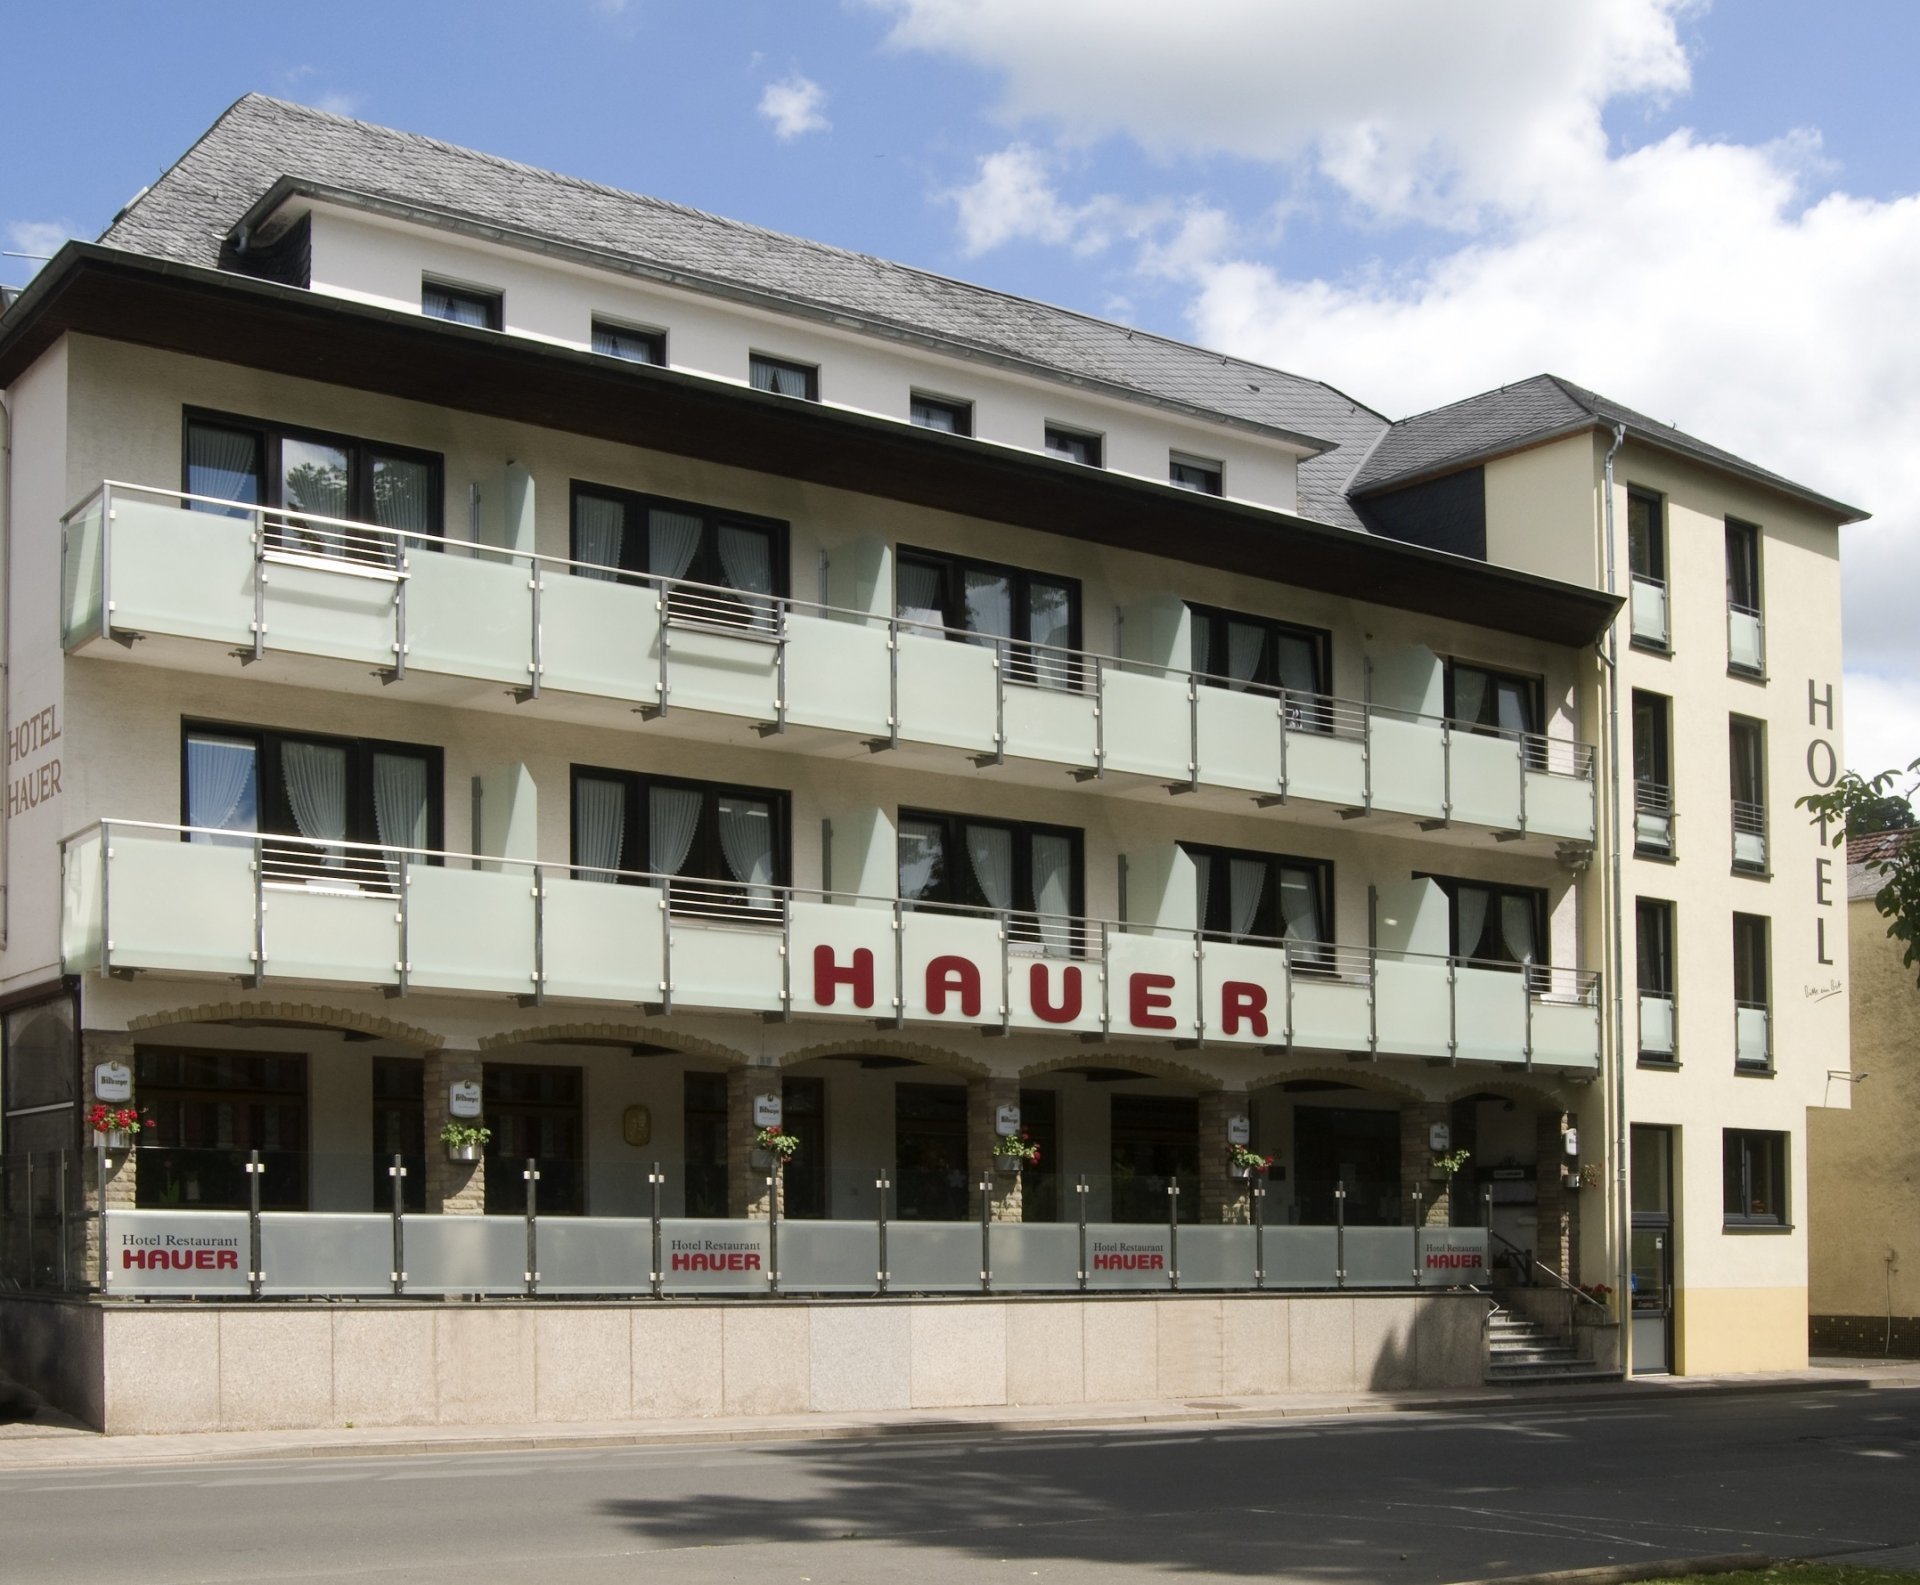 4 Tage Fronleichnam – Hotel Hauer (3 Sterne) in Bollendorf, Rheinland-Pfalz inkl. Halbpension